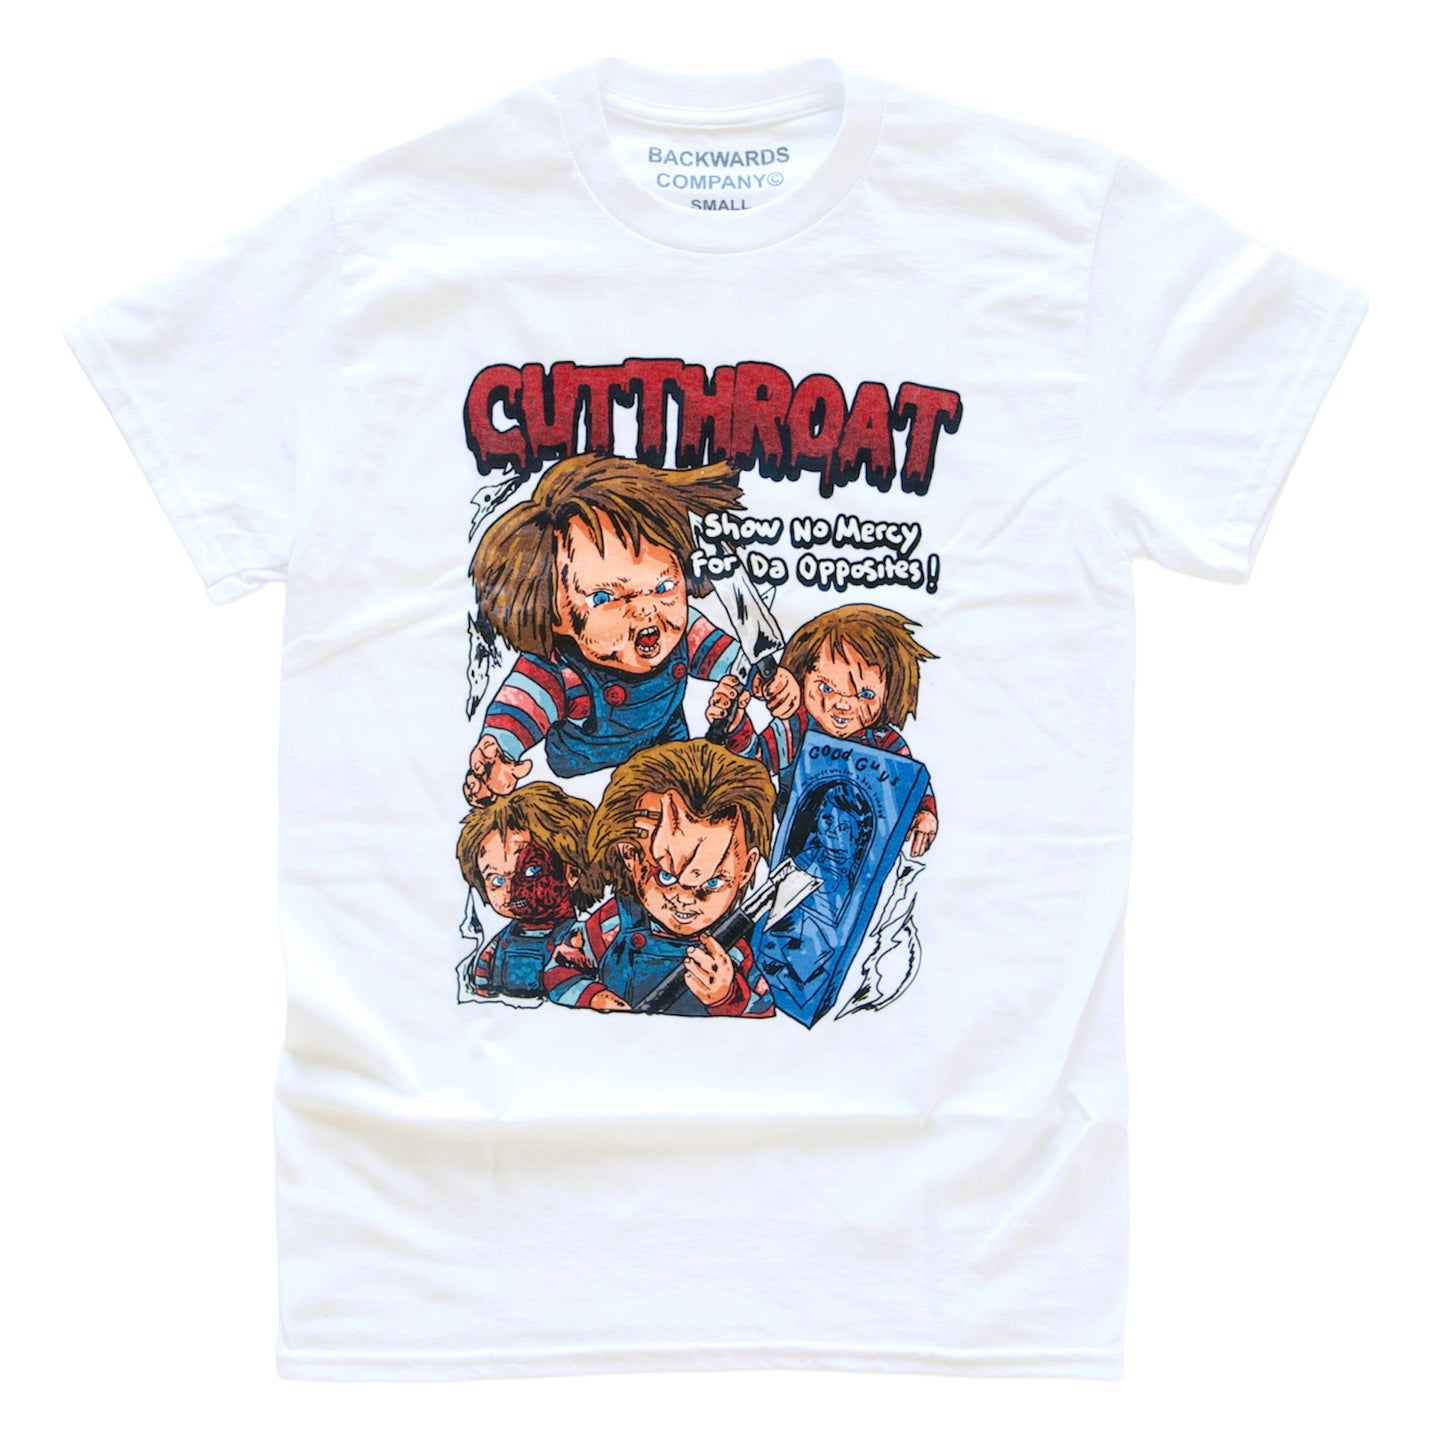 White “Cutthroat Chucky” T-Shirt